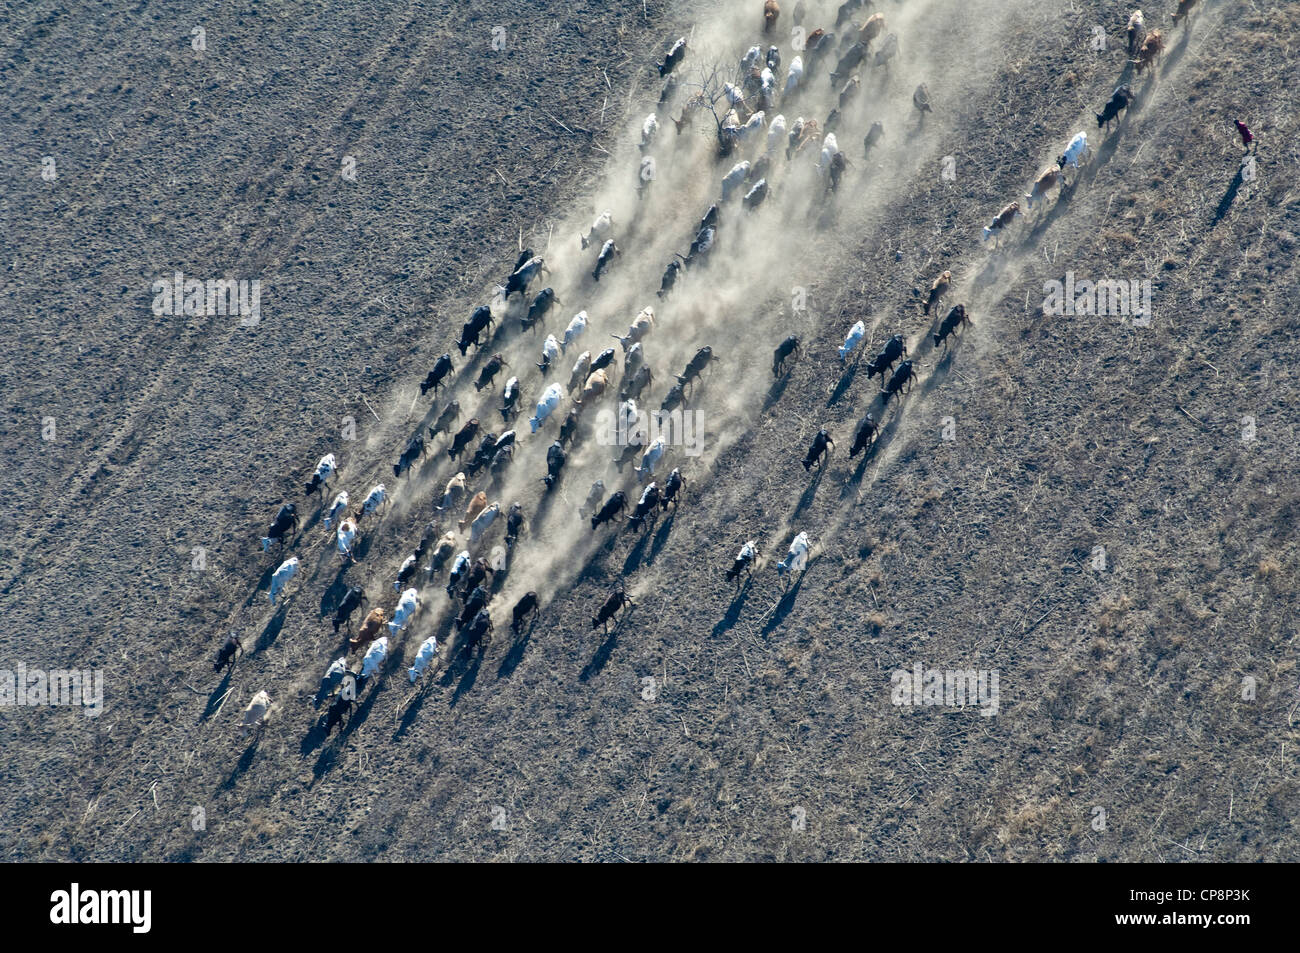 Passage de bovins un terrain poussiéreux, vue aérienne, la région d'Arusha, Tanzanie Banque D'Images